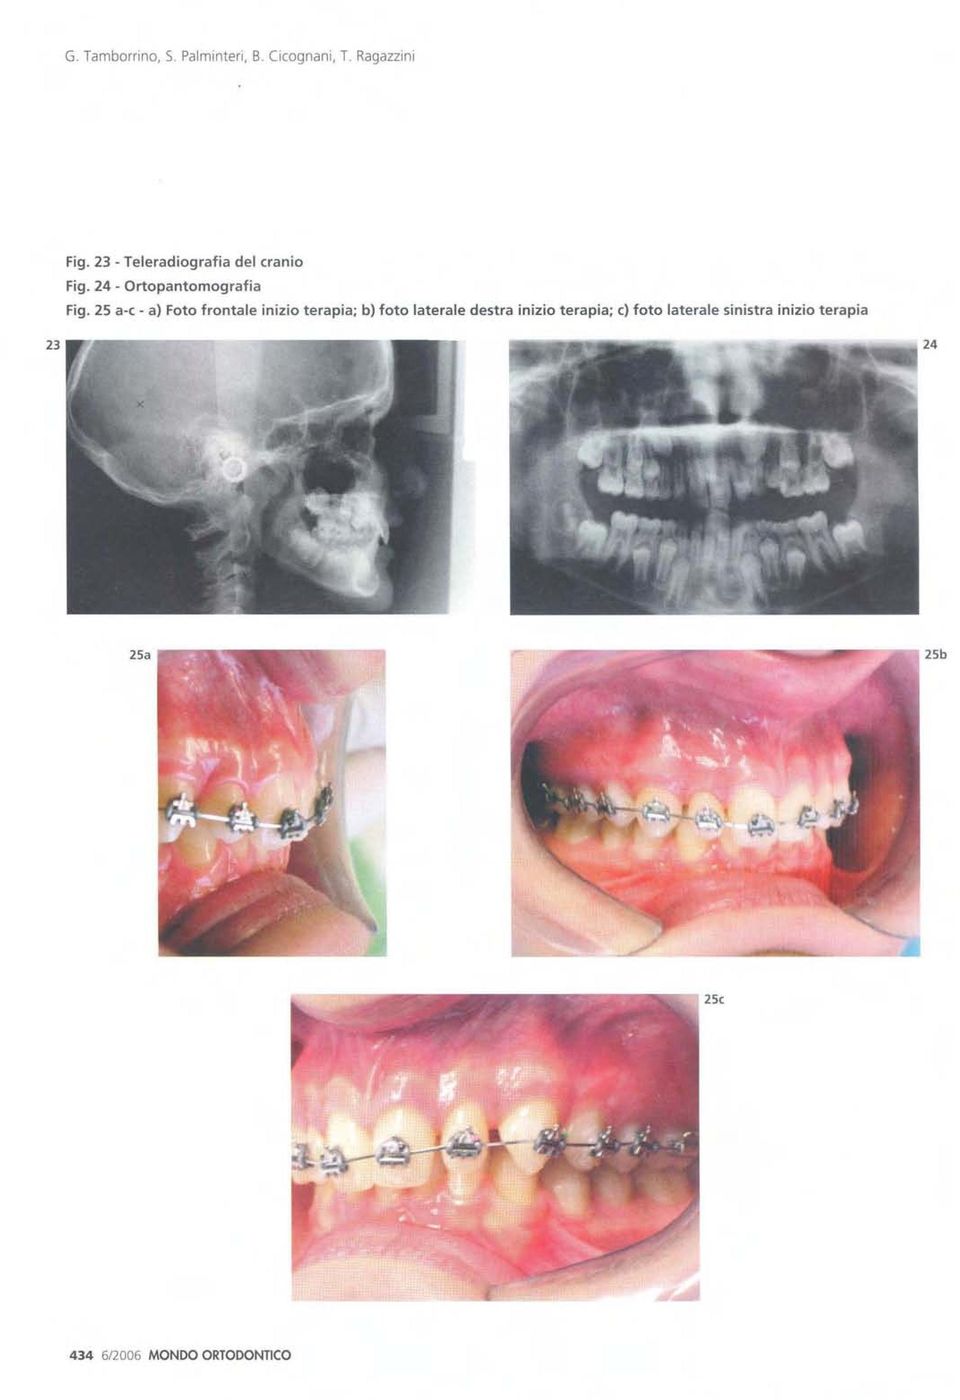 25 a-c - a) Foto frontale inizio terapia; b) foto laterale destra inizio terapia; c) foto